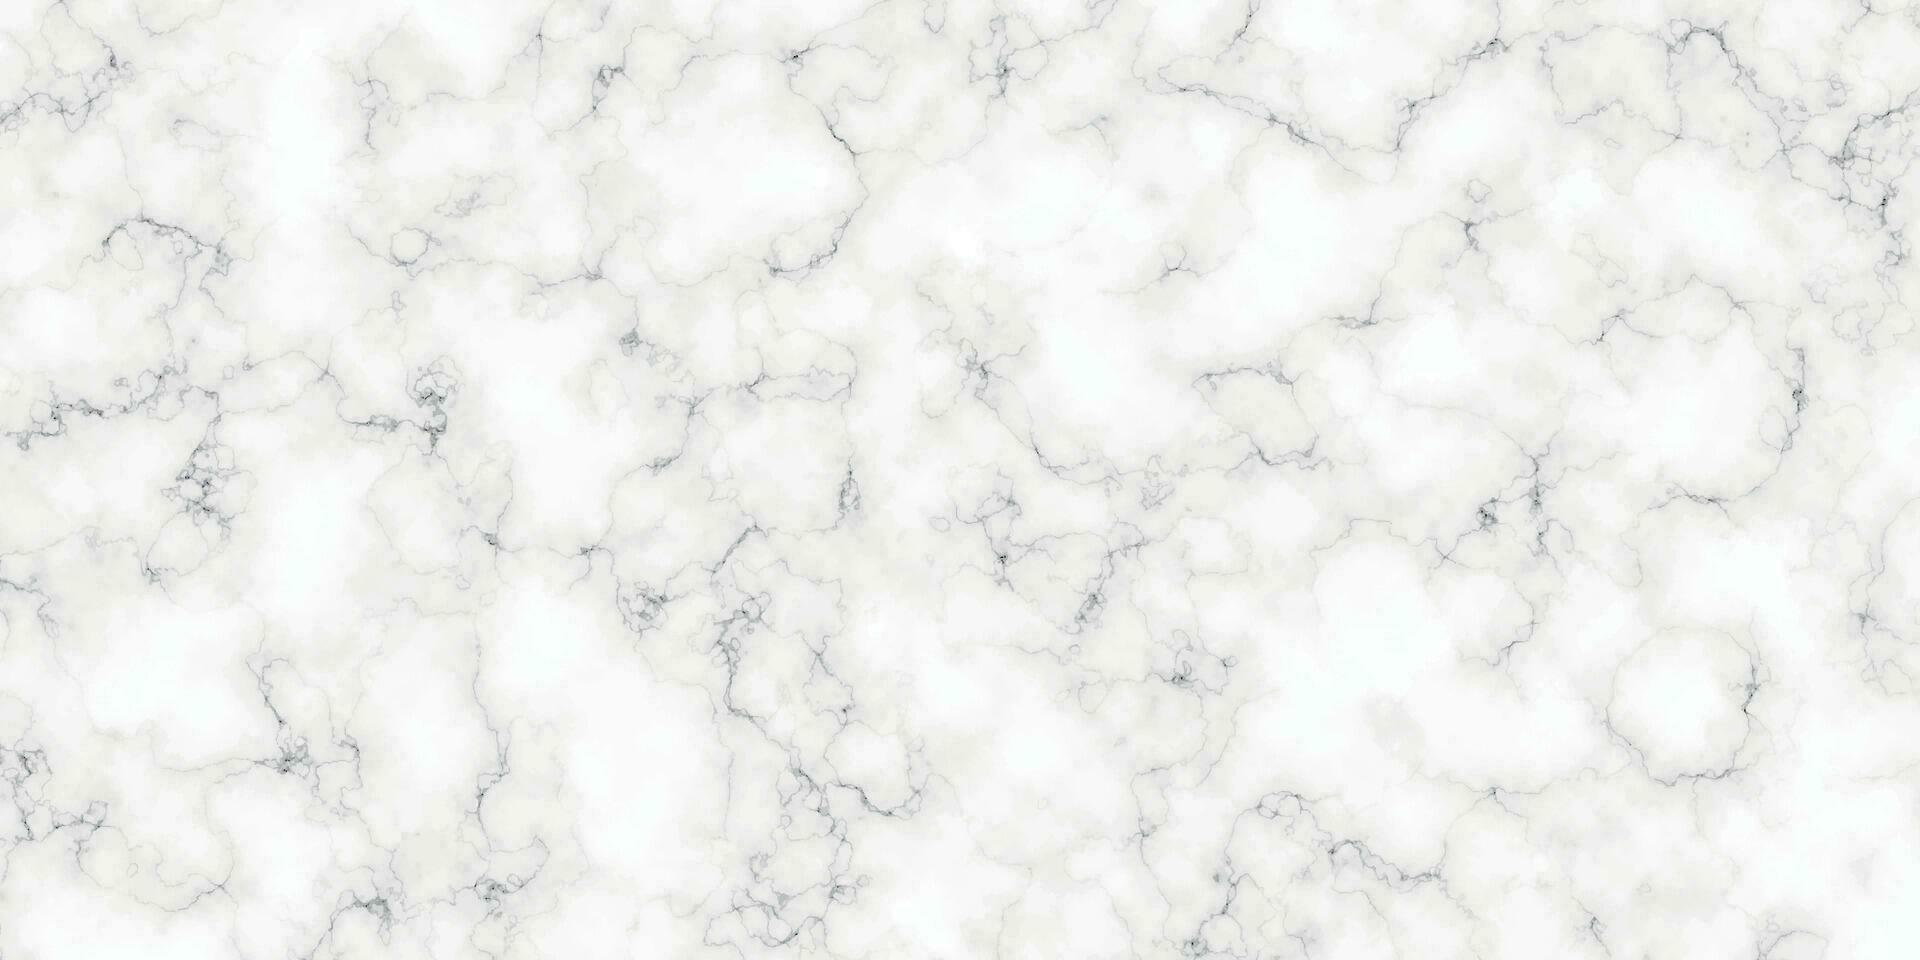 wit marmeren textuur. natuurlijk wit marmeren tegels. naadloos patroon van tegel steen achtergrond. luxe wit het marmeren ontwerp vector